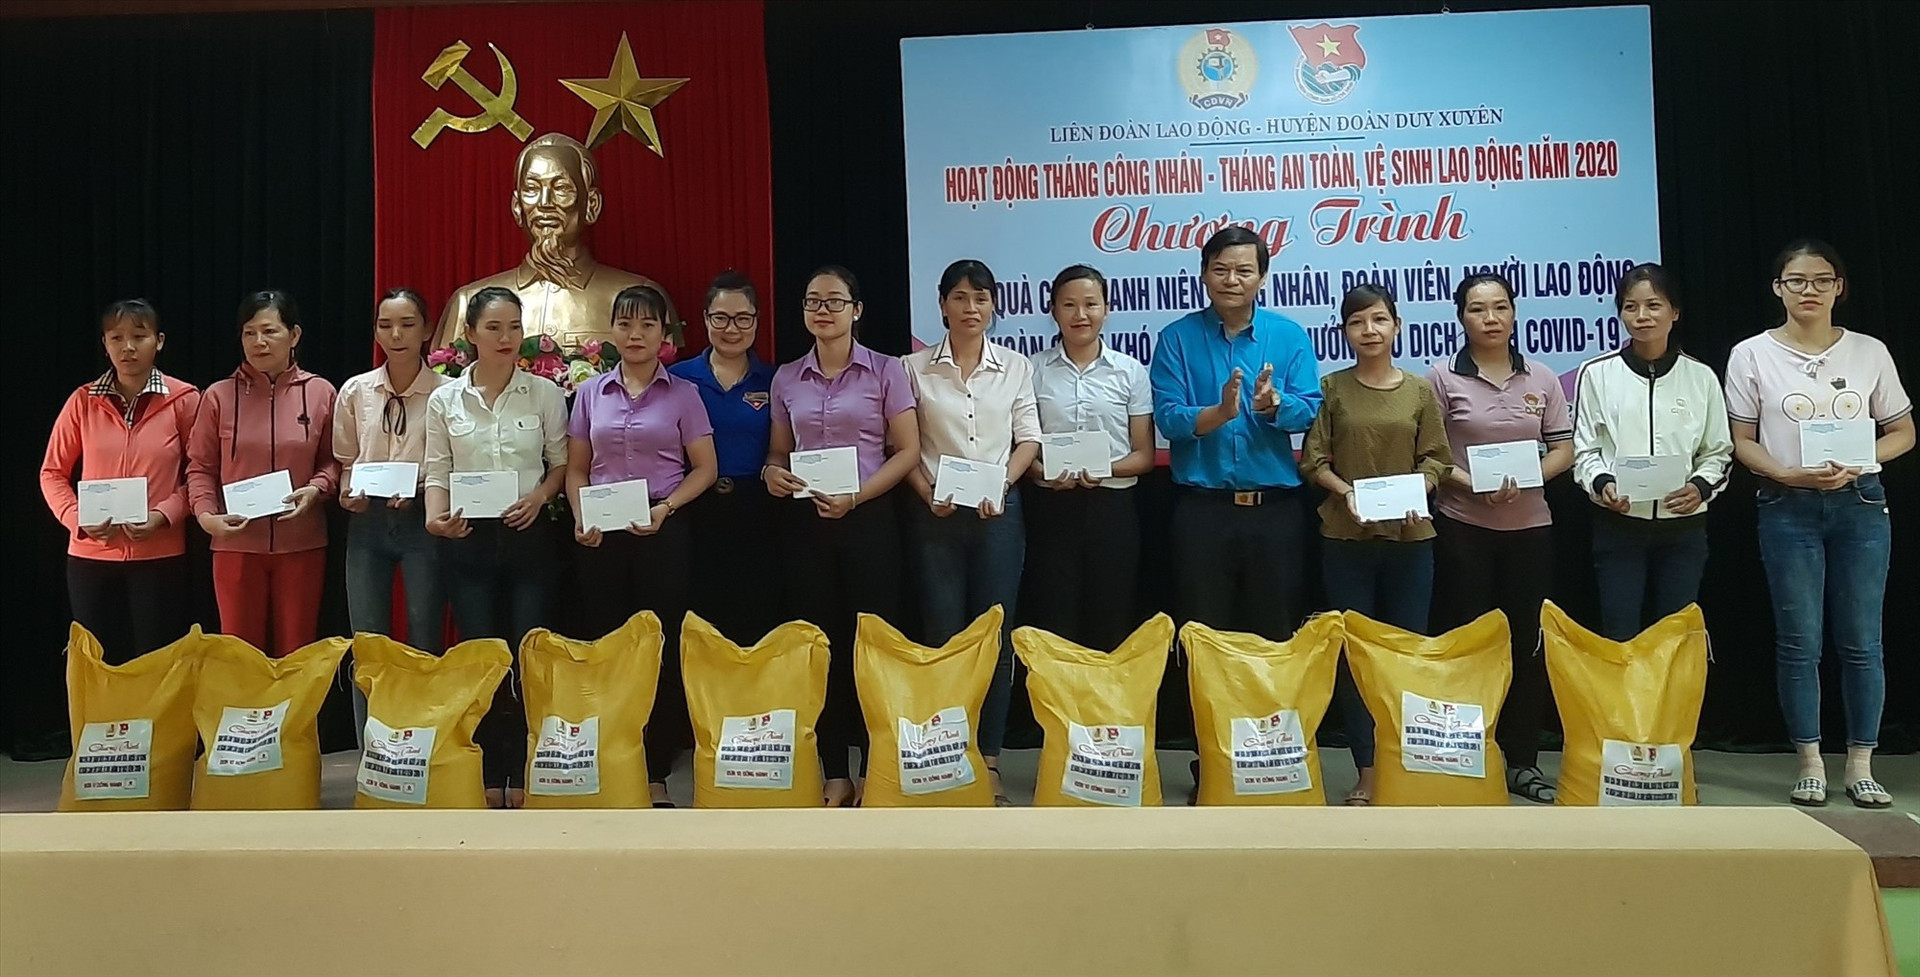 Công đoàn huyện Duy Xuyên phối hợp trao quà hỗ trợ người lao động bị ảnh hưởng sau đợt bùng phát dịch Covid-19 năm 2020. Ảnh: T.P